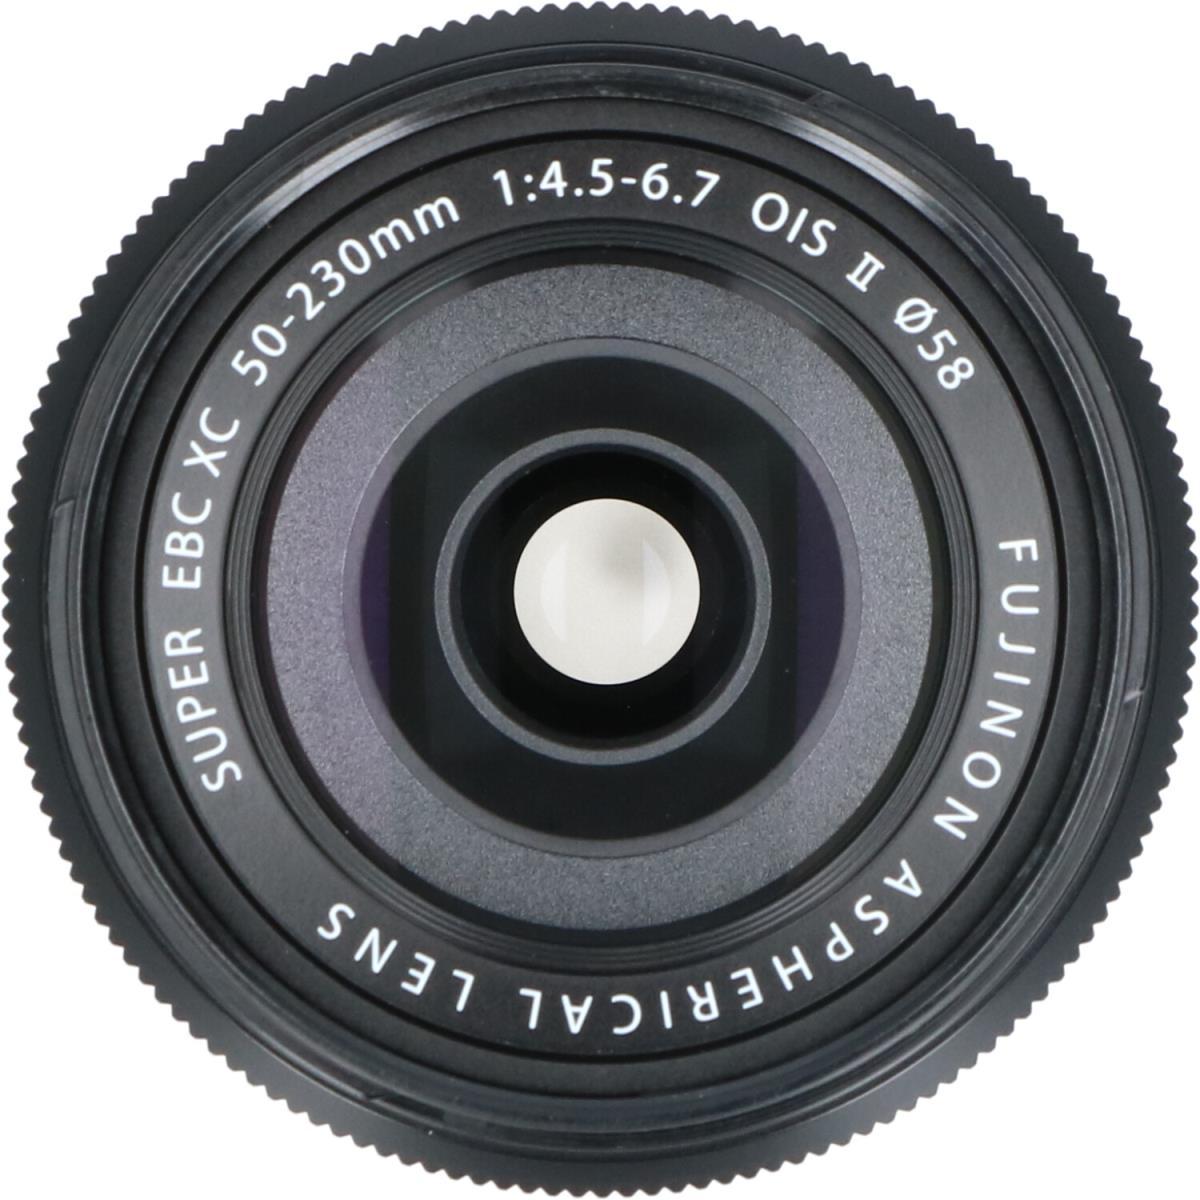 日本未入荷 Fujifilm Lens f/4.5-6.7 XC50-230mm Zoom f/4.5-6.7 OISII ...